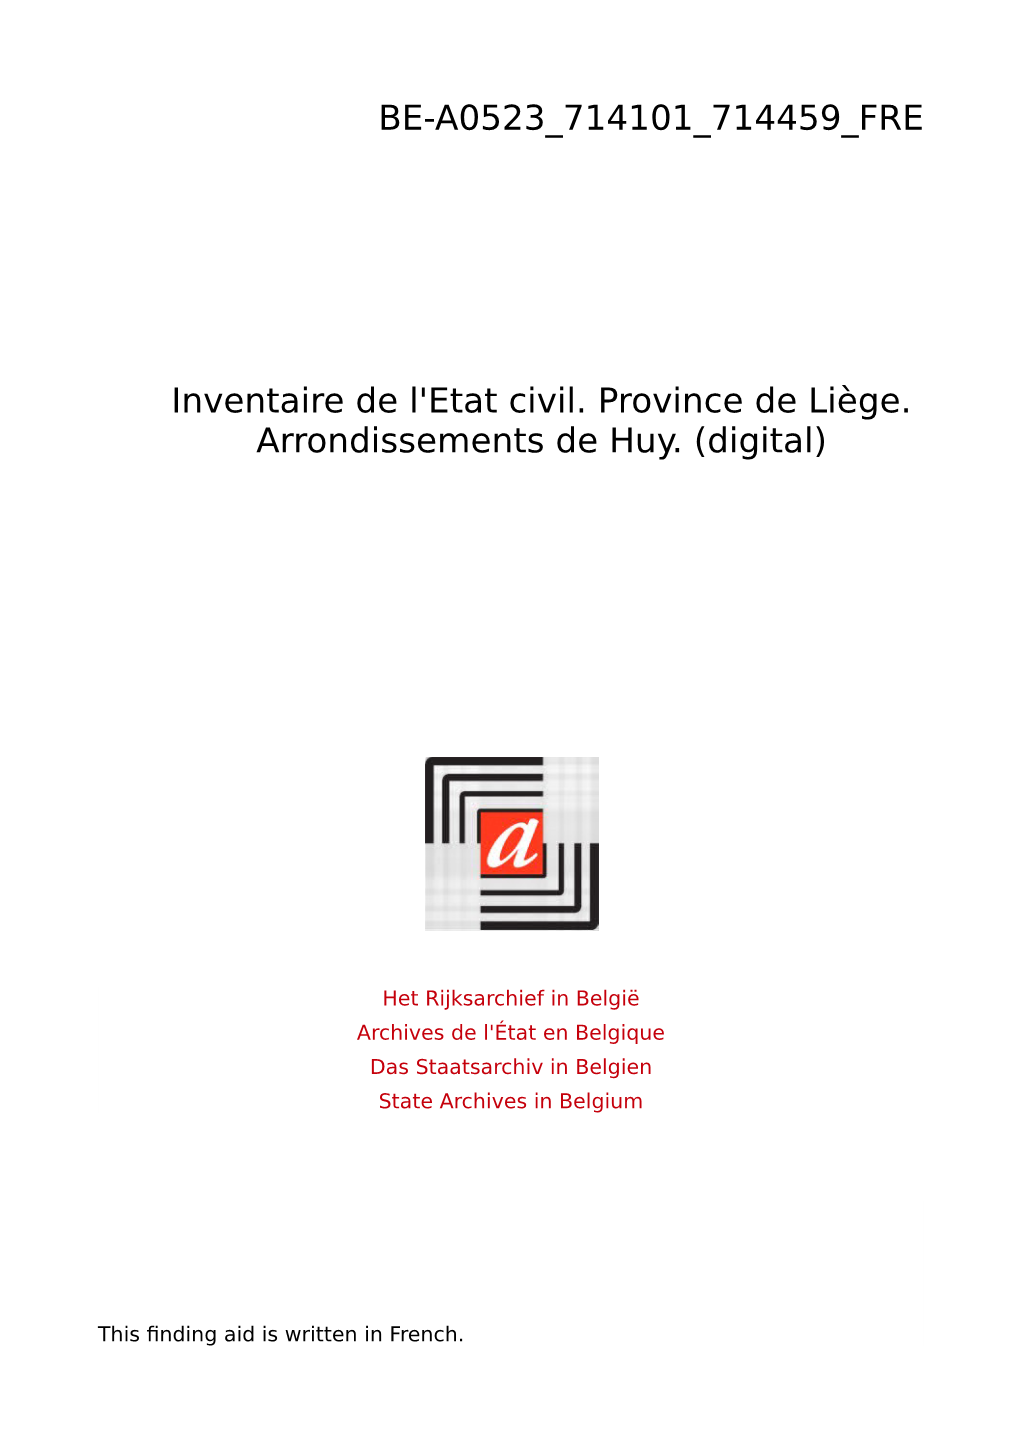 État Civil. Province De Liège. Arrondissement Huy. (Digital)